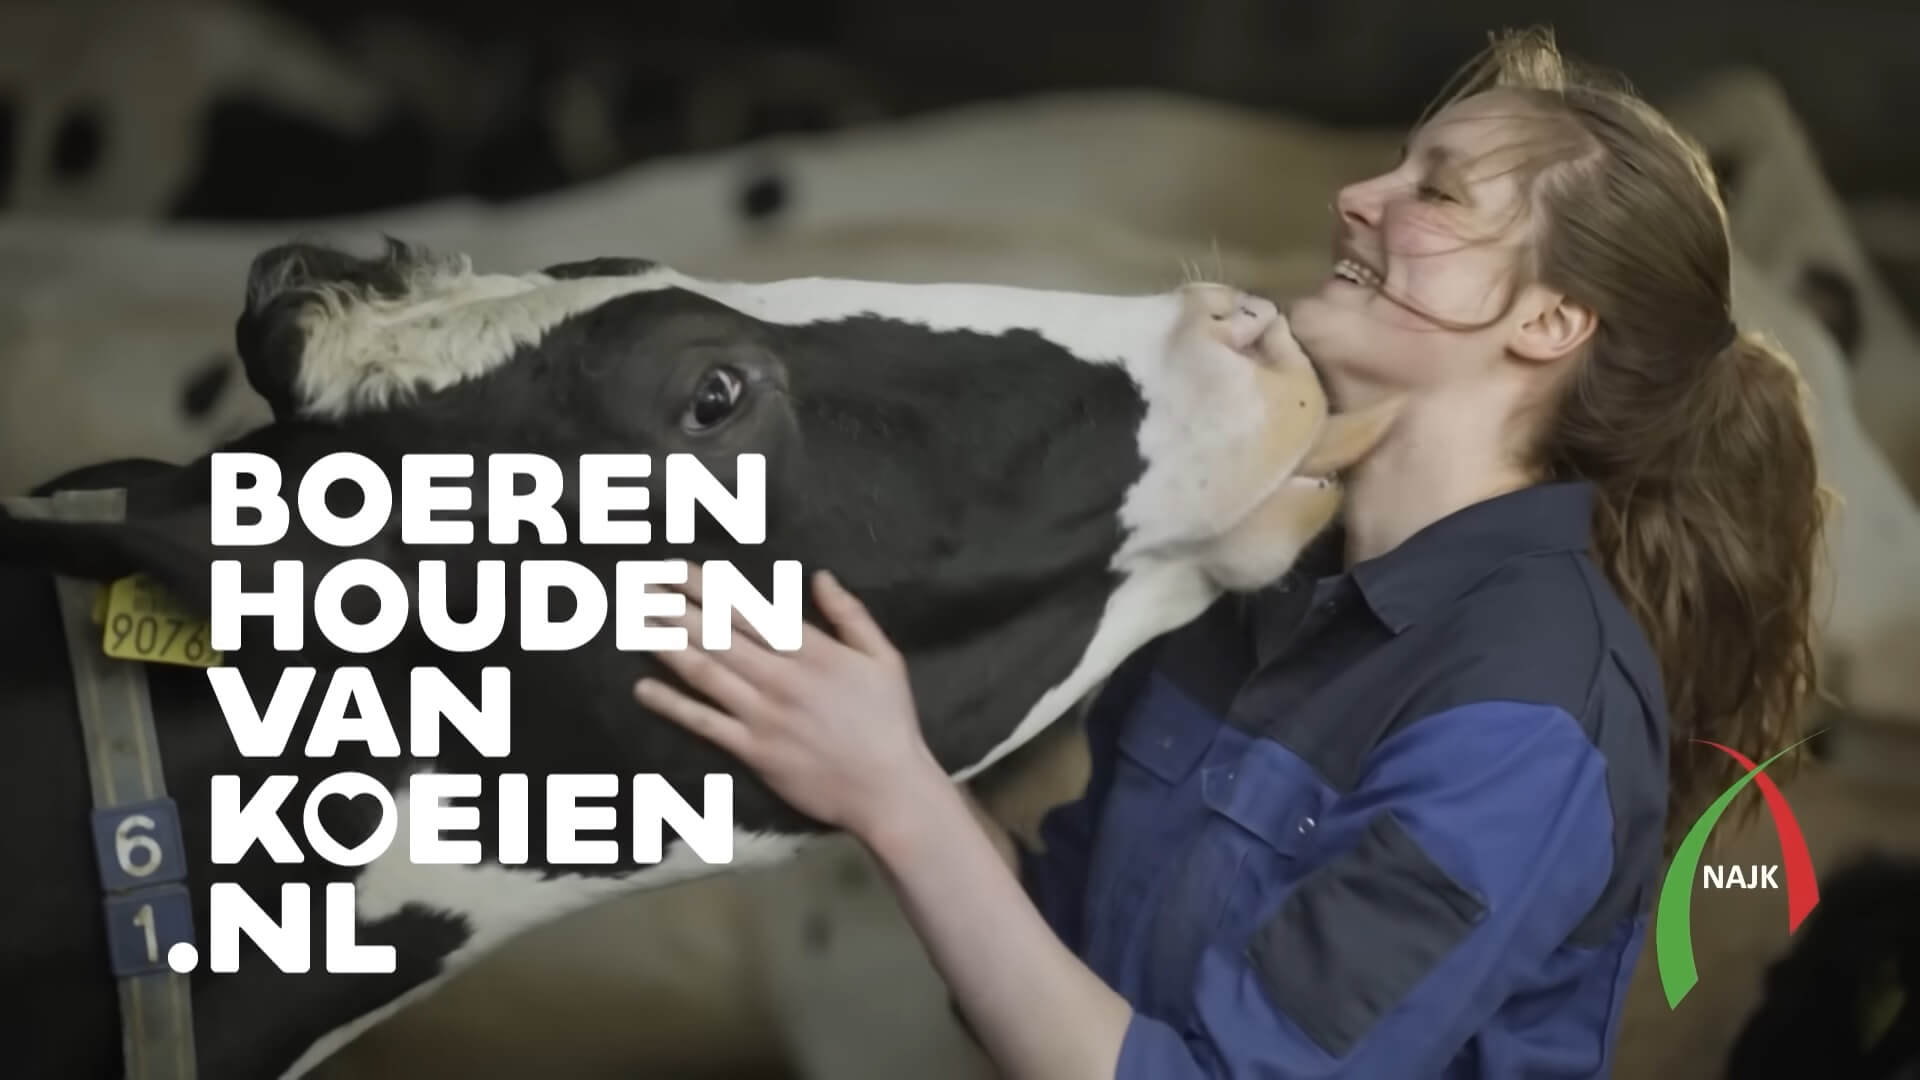 Televisiecommercial 'Boeren houden van koeien' is misleidend